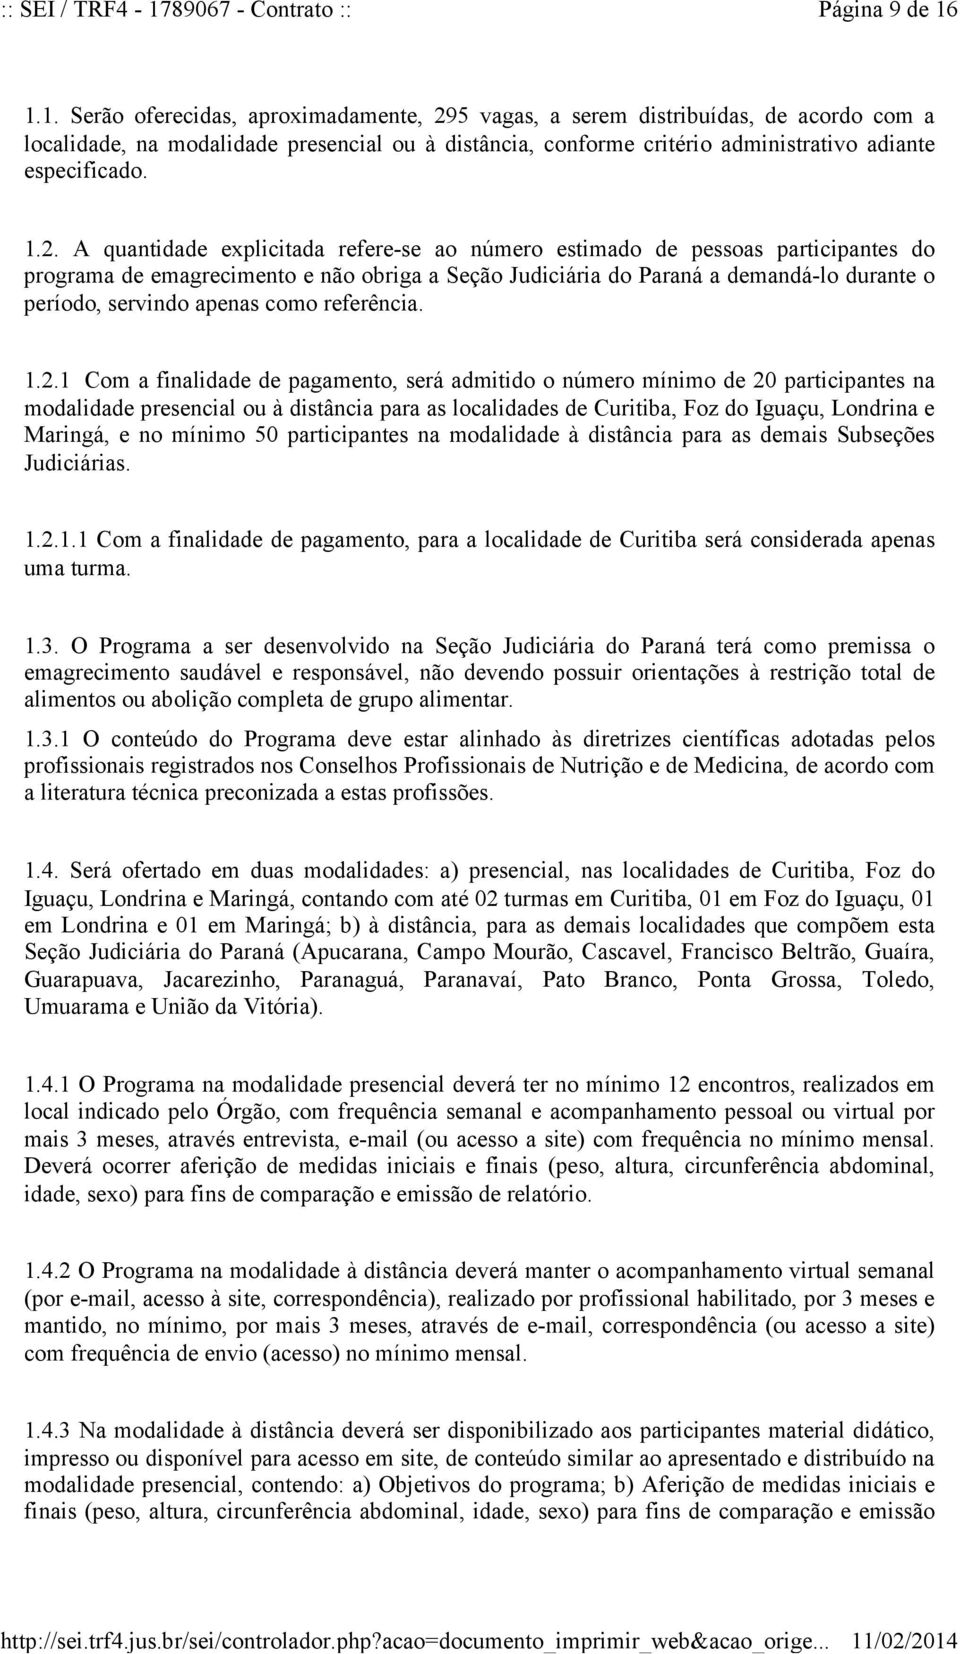 2. A quantidade explicitada refere-se ao número estimado de pessoas participantes do programa de emagrecimento e não obriga a Seção Judiciária do Paraná a demandá-lo durante o período, servindo